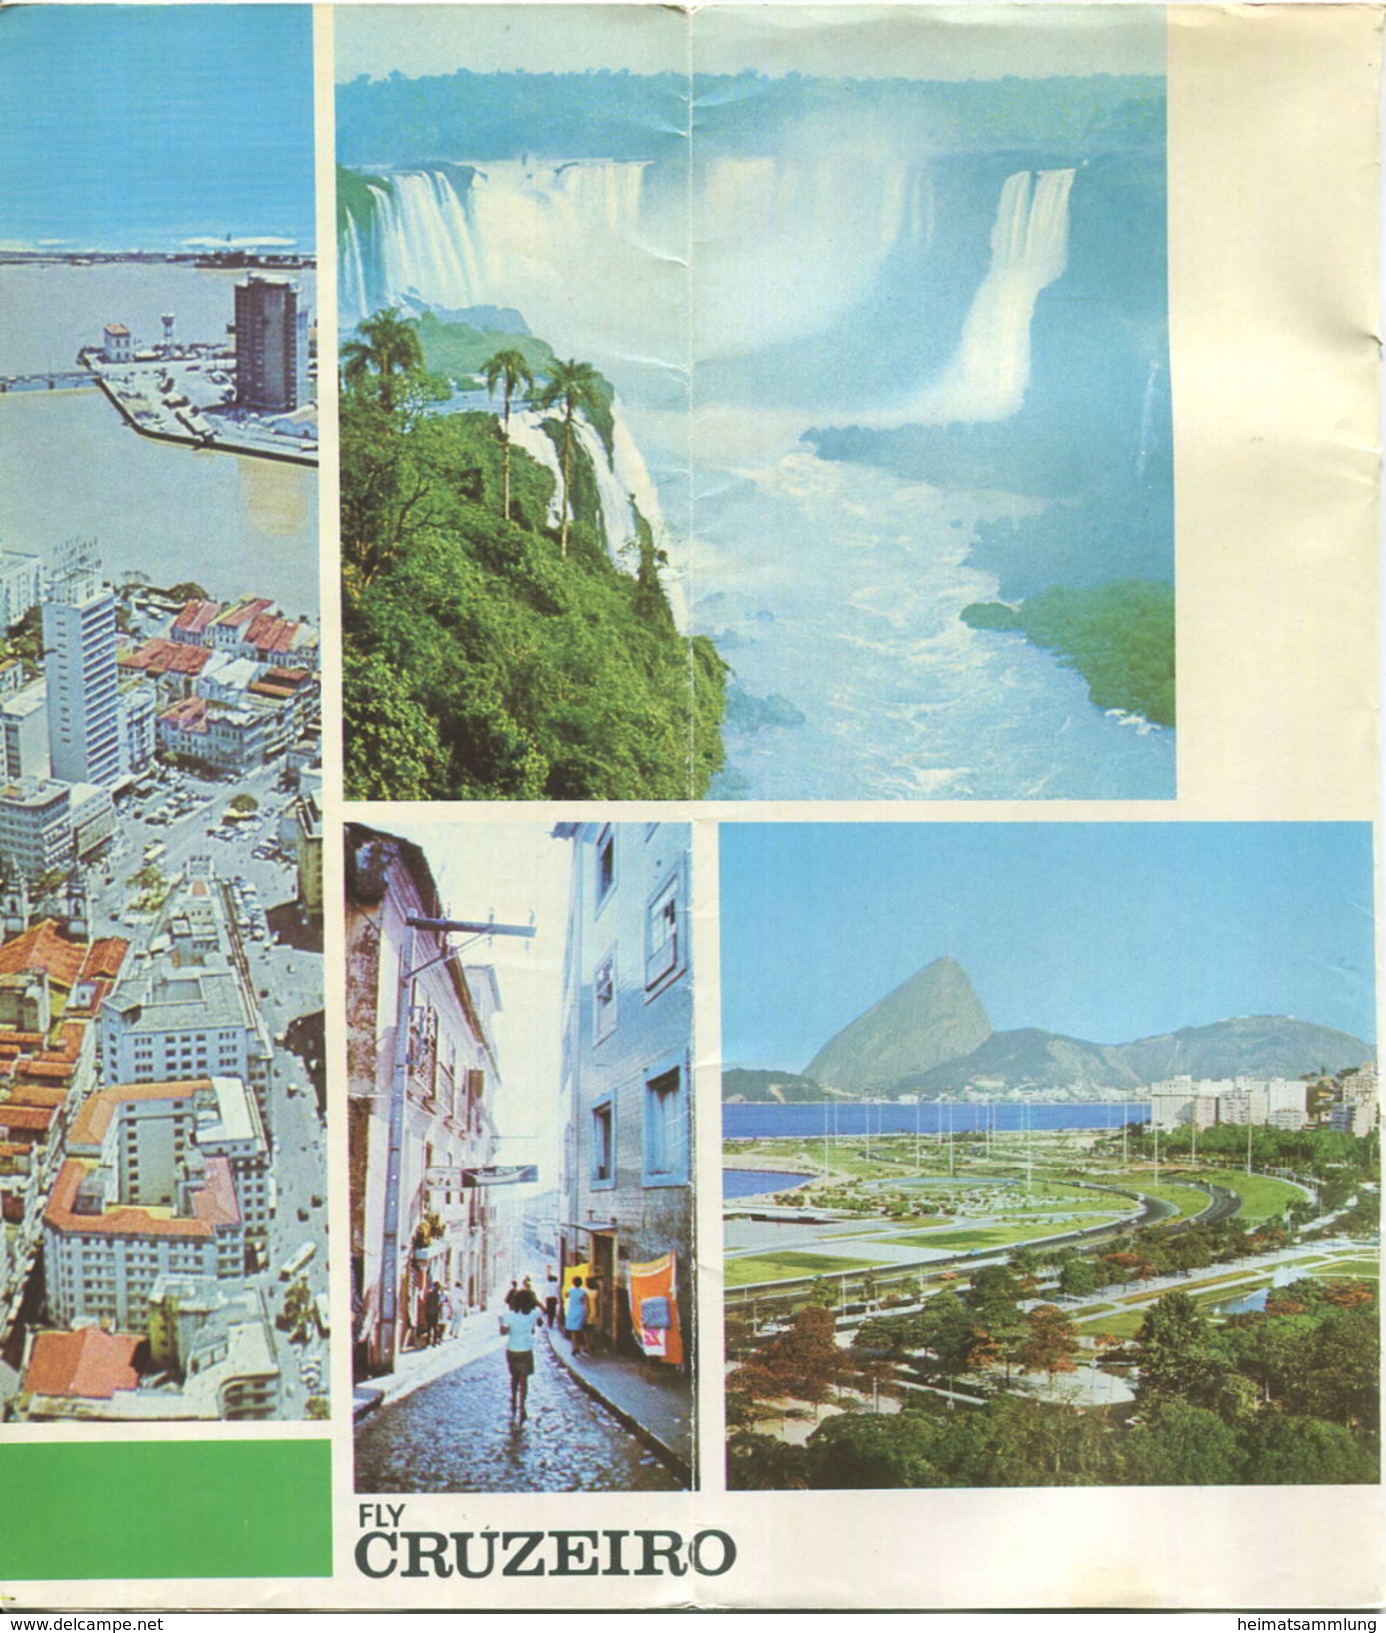 Brasil - Timetable Fly Cruzeiro 1970 - 8 Seiten Mit 10 Abbildungen - Flugdaten - Wereld